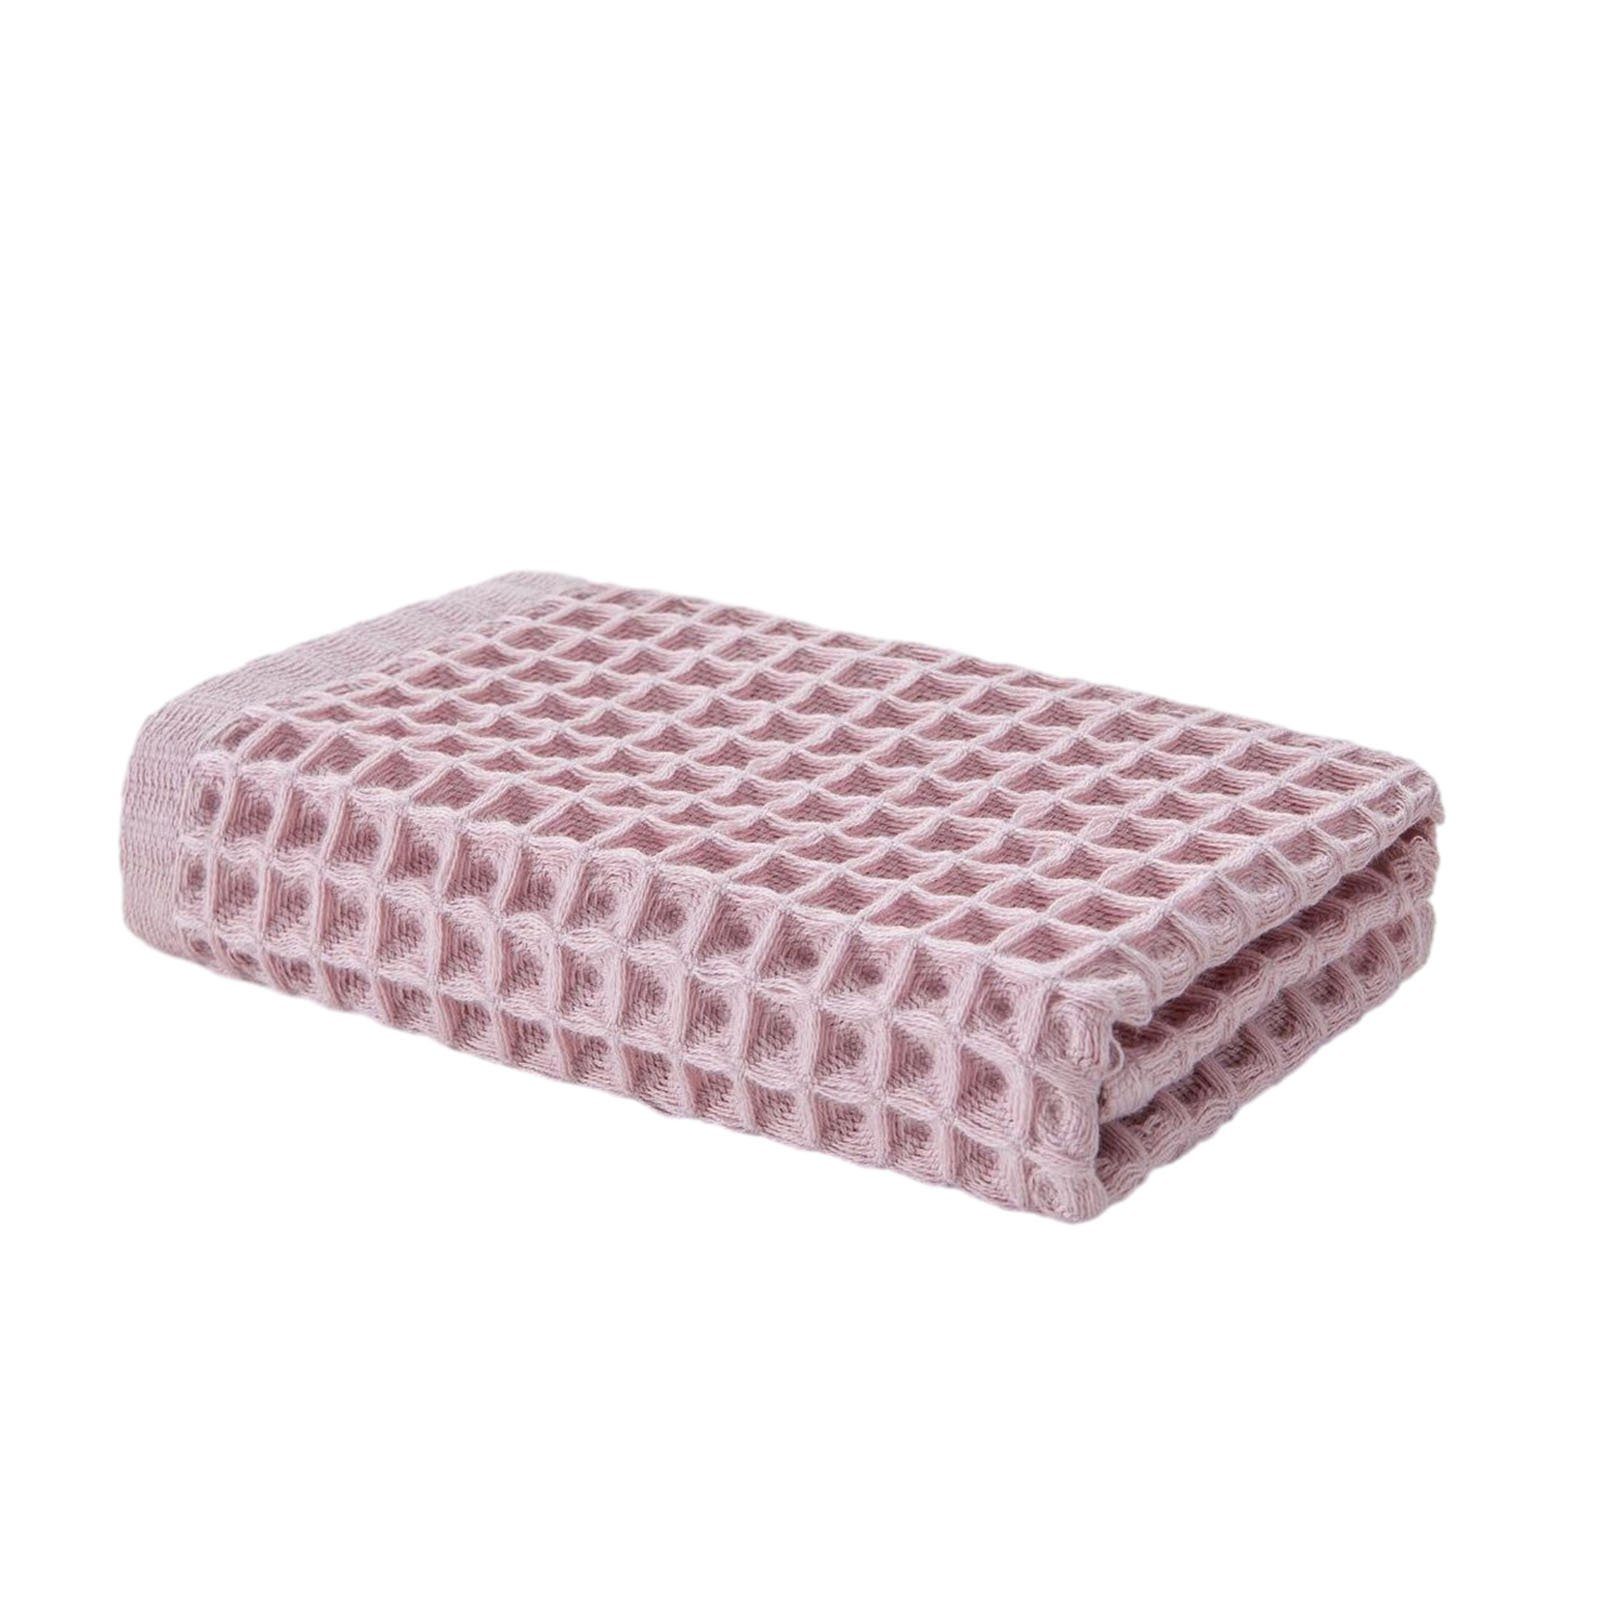 Blusmart Handtuch Set Quadratisches Handtuch Mit Waffelmuster Aus Reiner Baumwolle pink